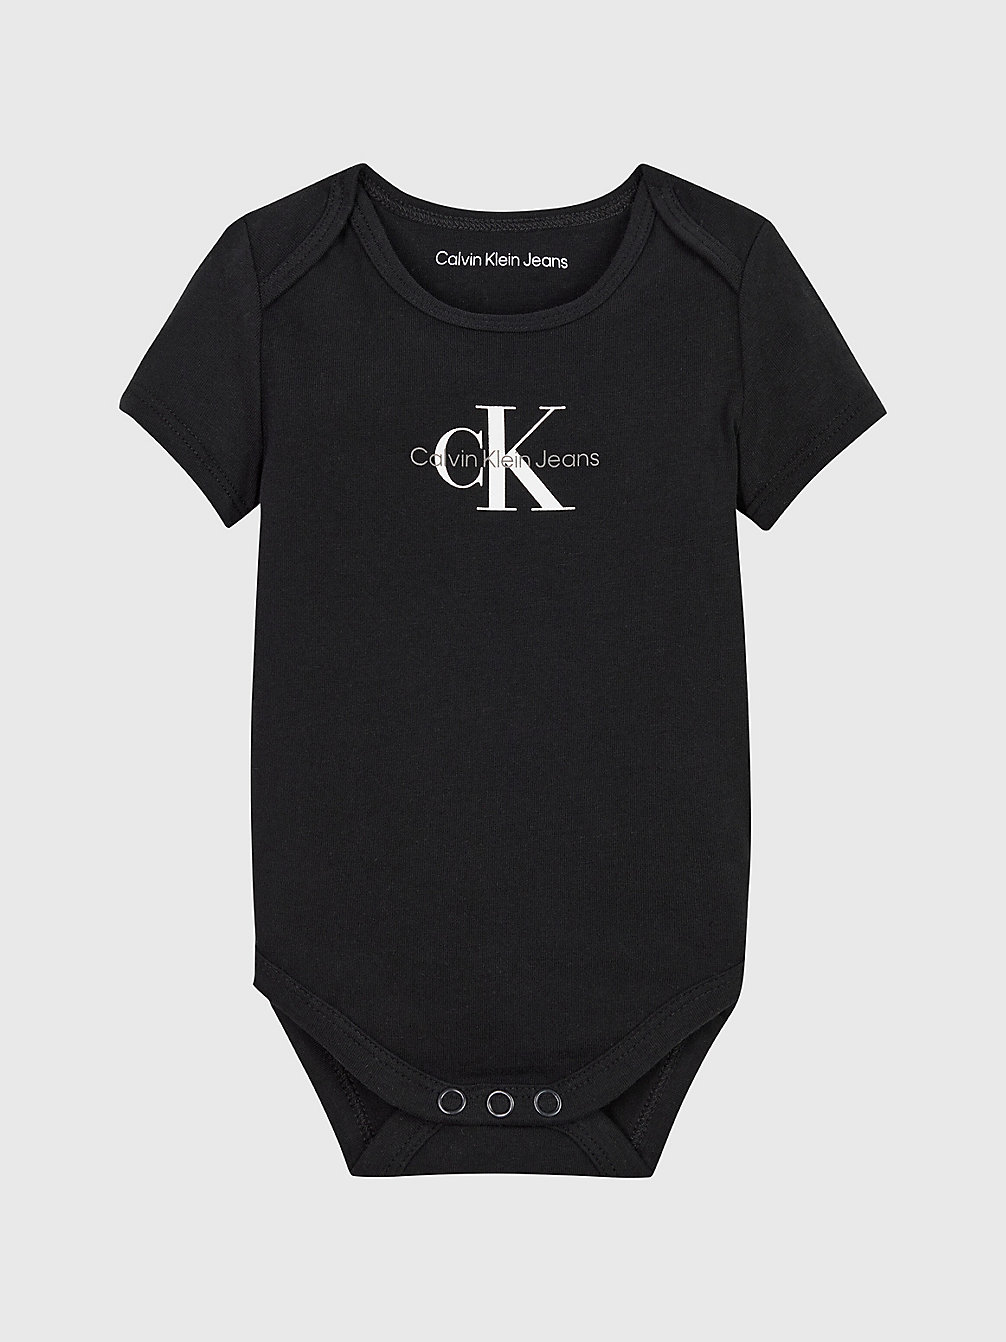 CK BLACK > Newborn-Bodysuit Met Logo > undefined newborn - Calvin Klein